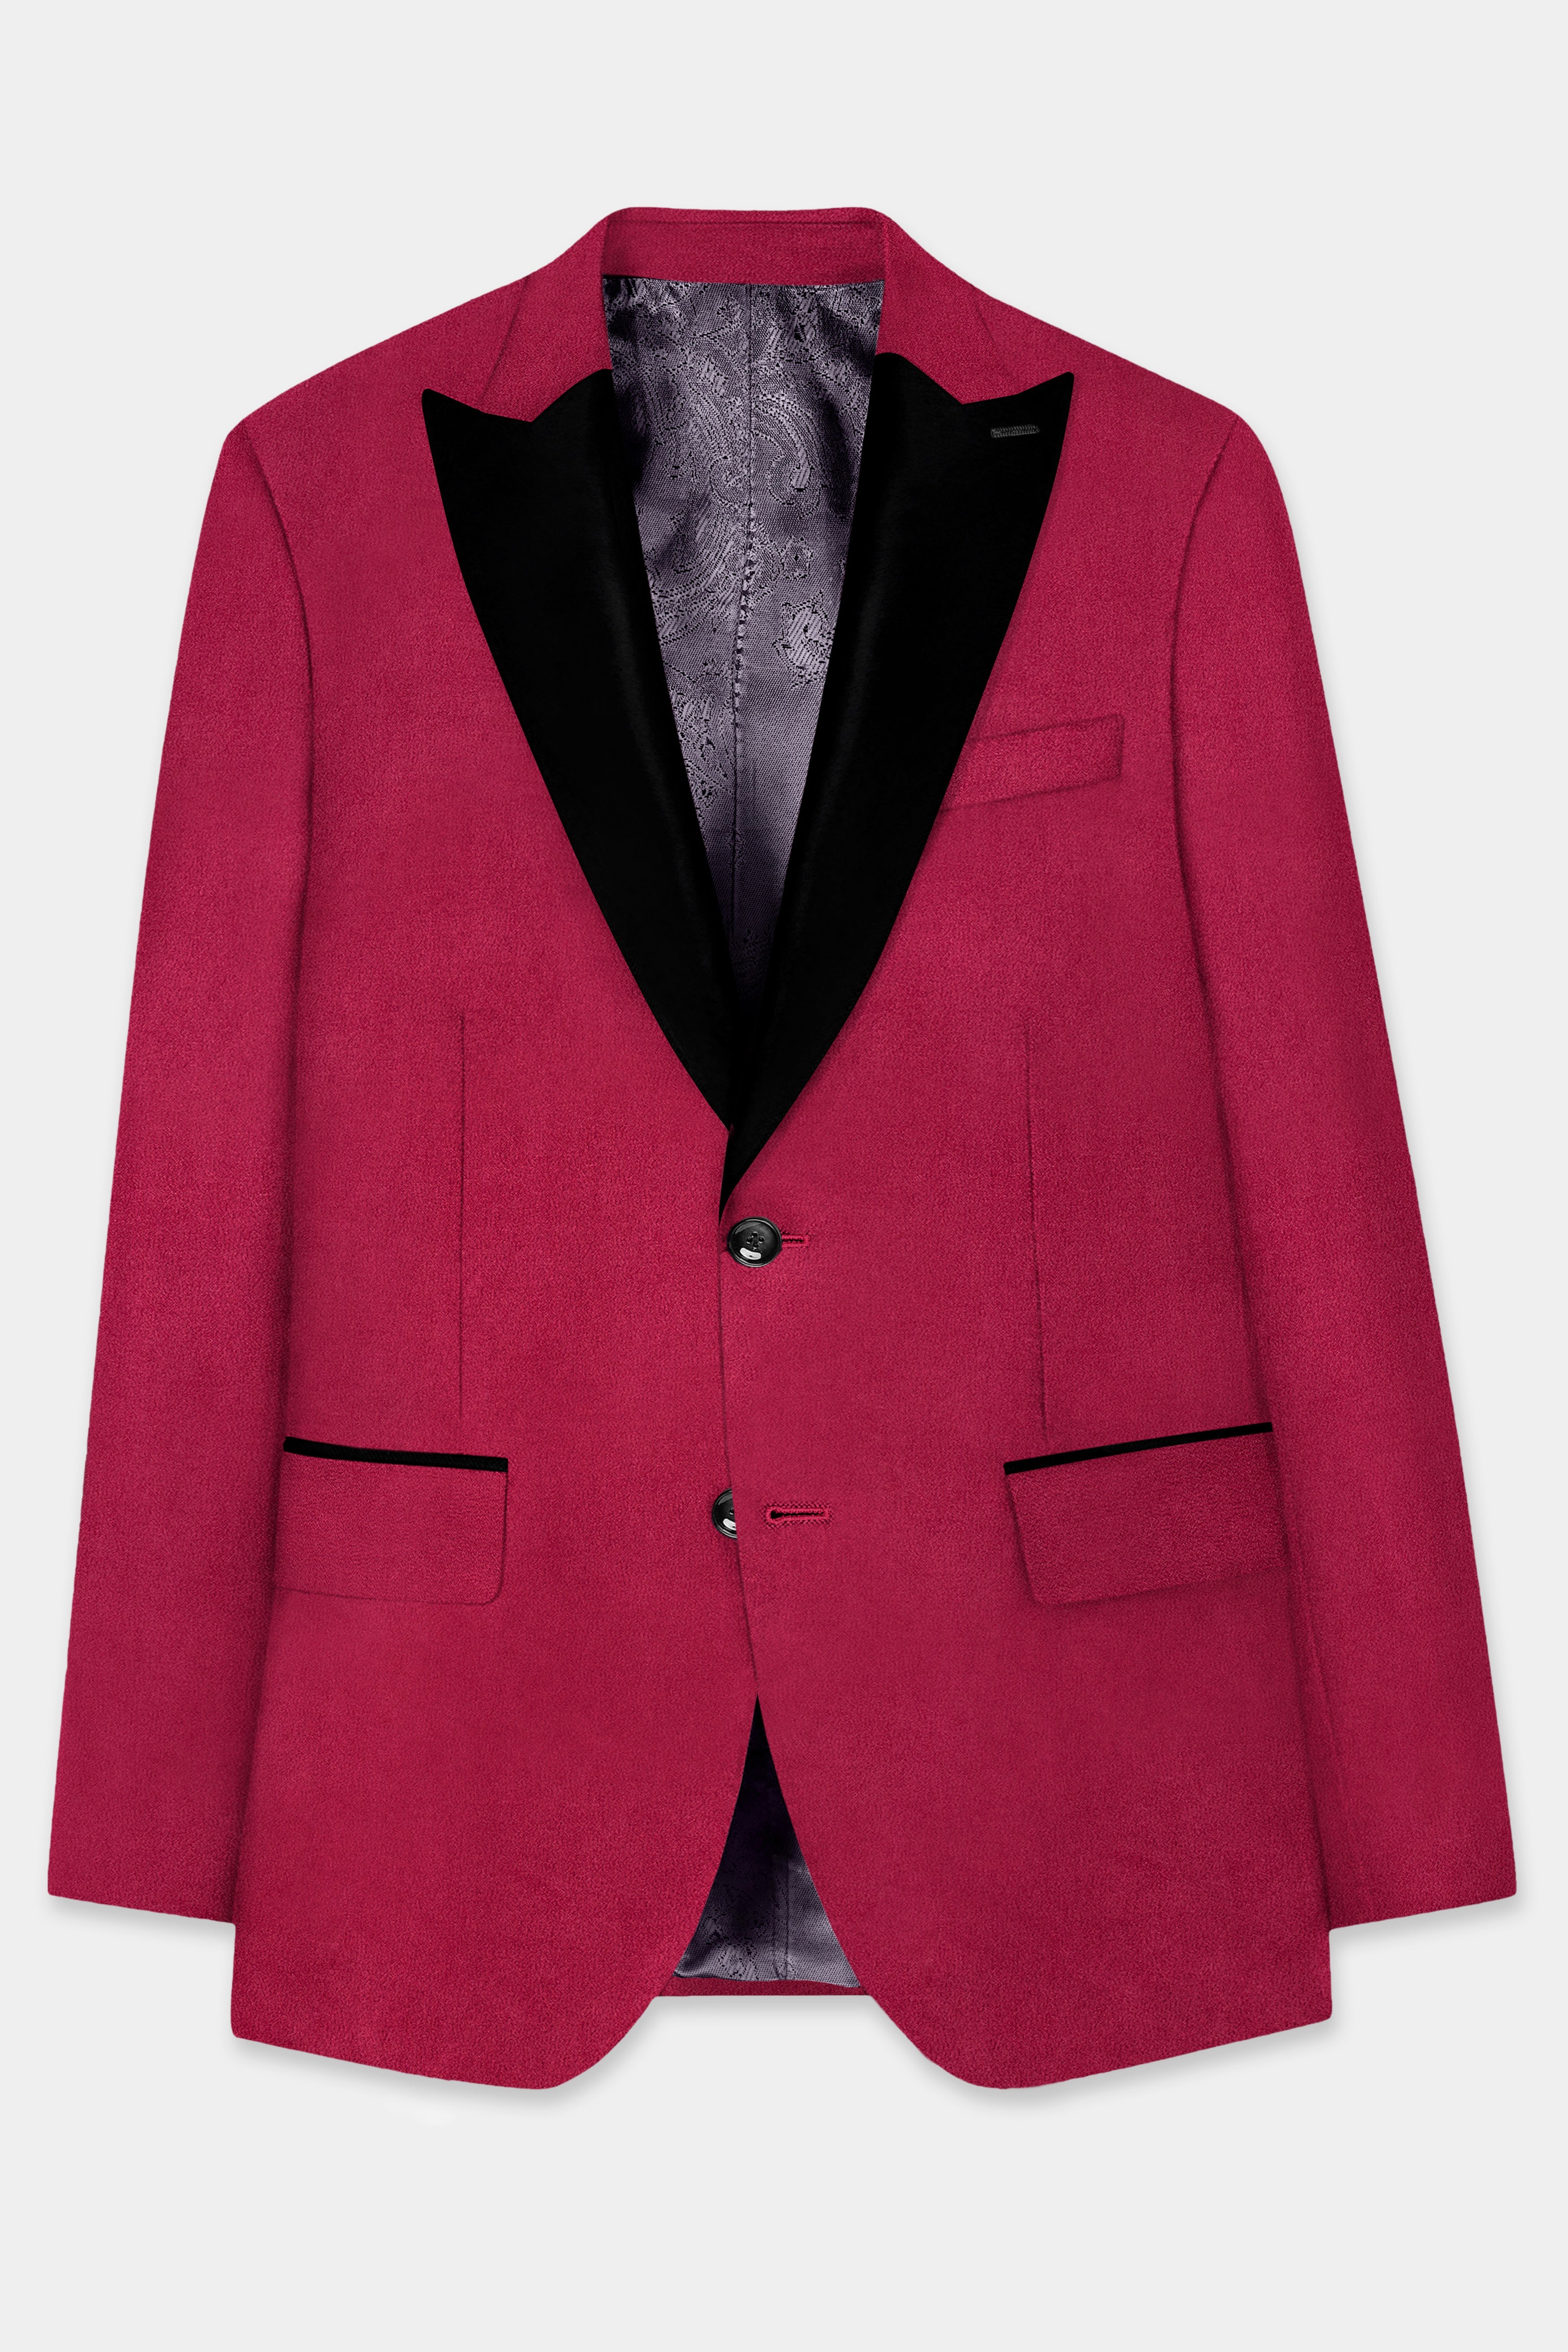 Claret Red Velvet Peak Collar Tuxedo Blazer